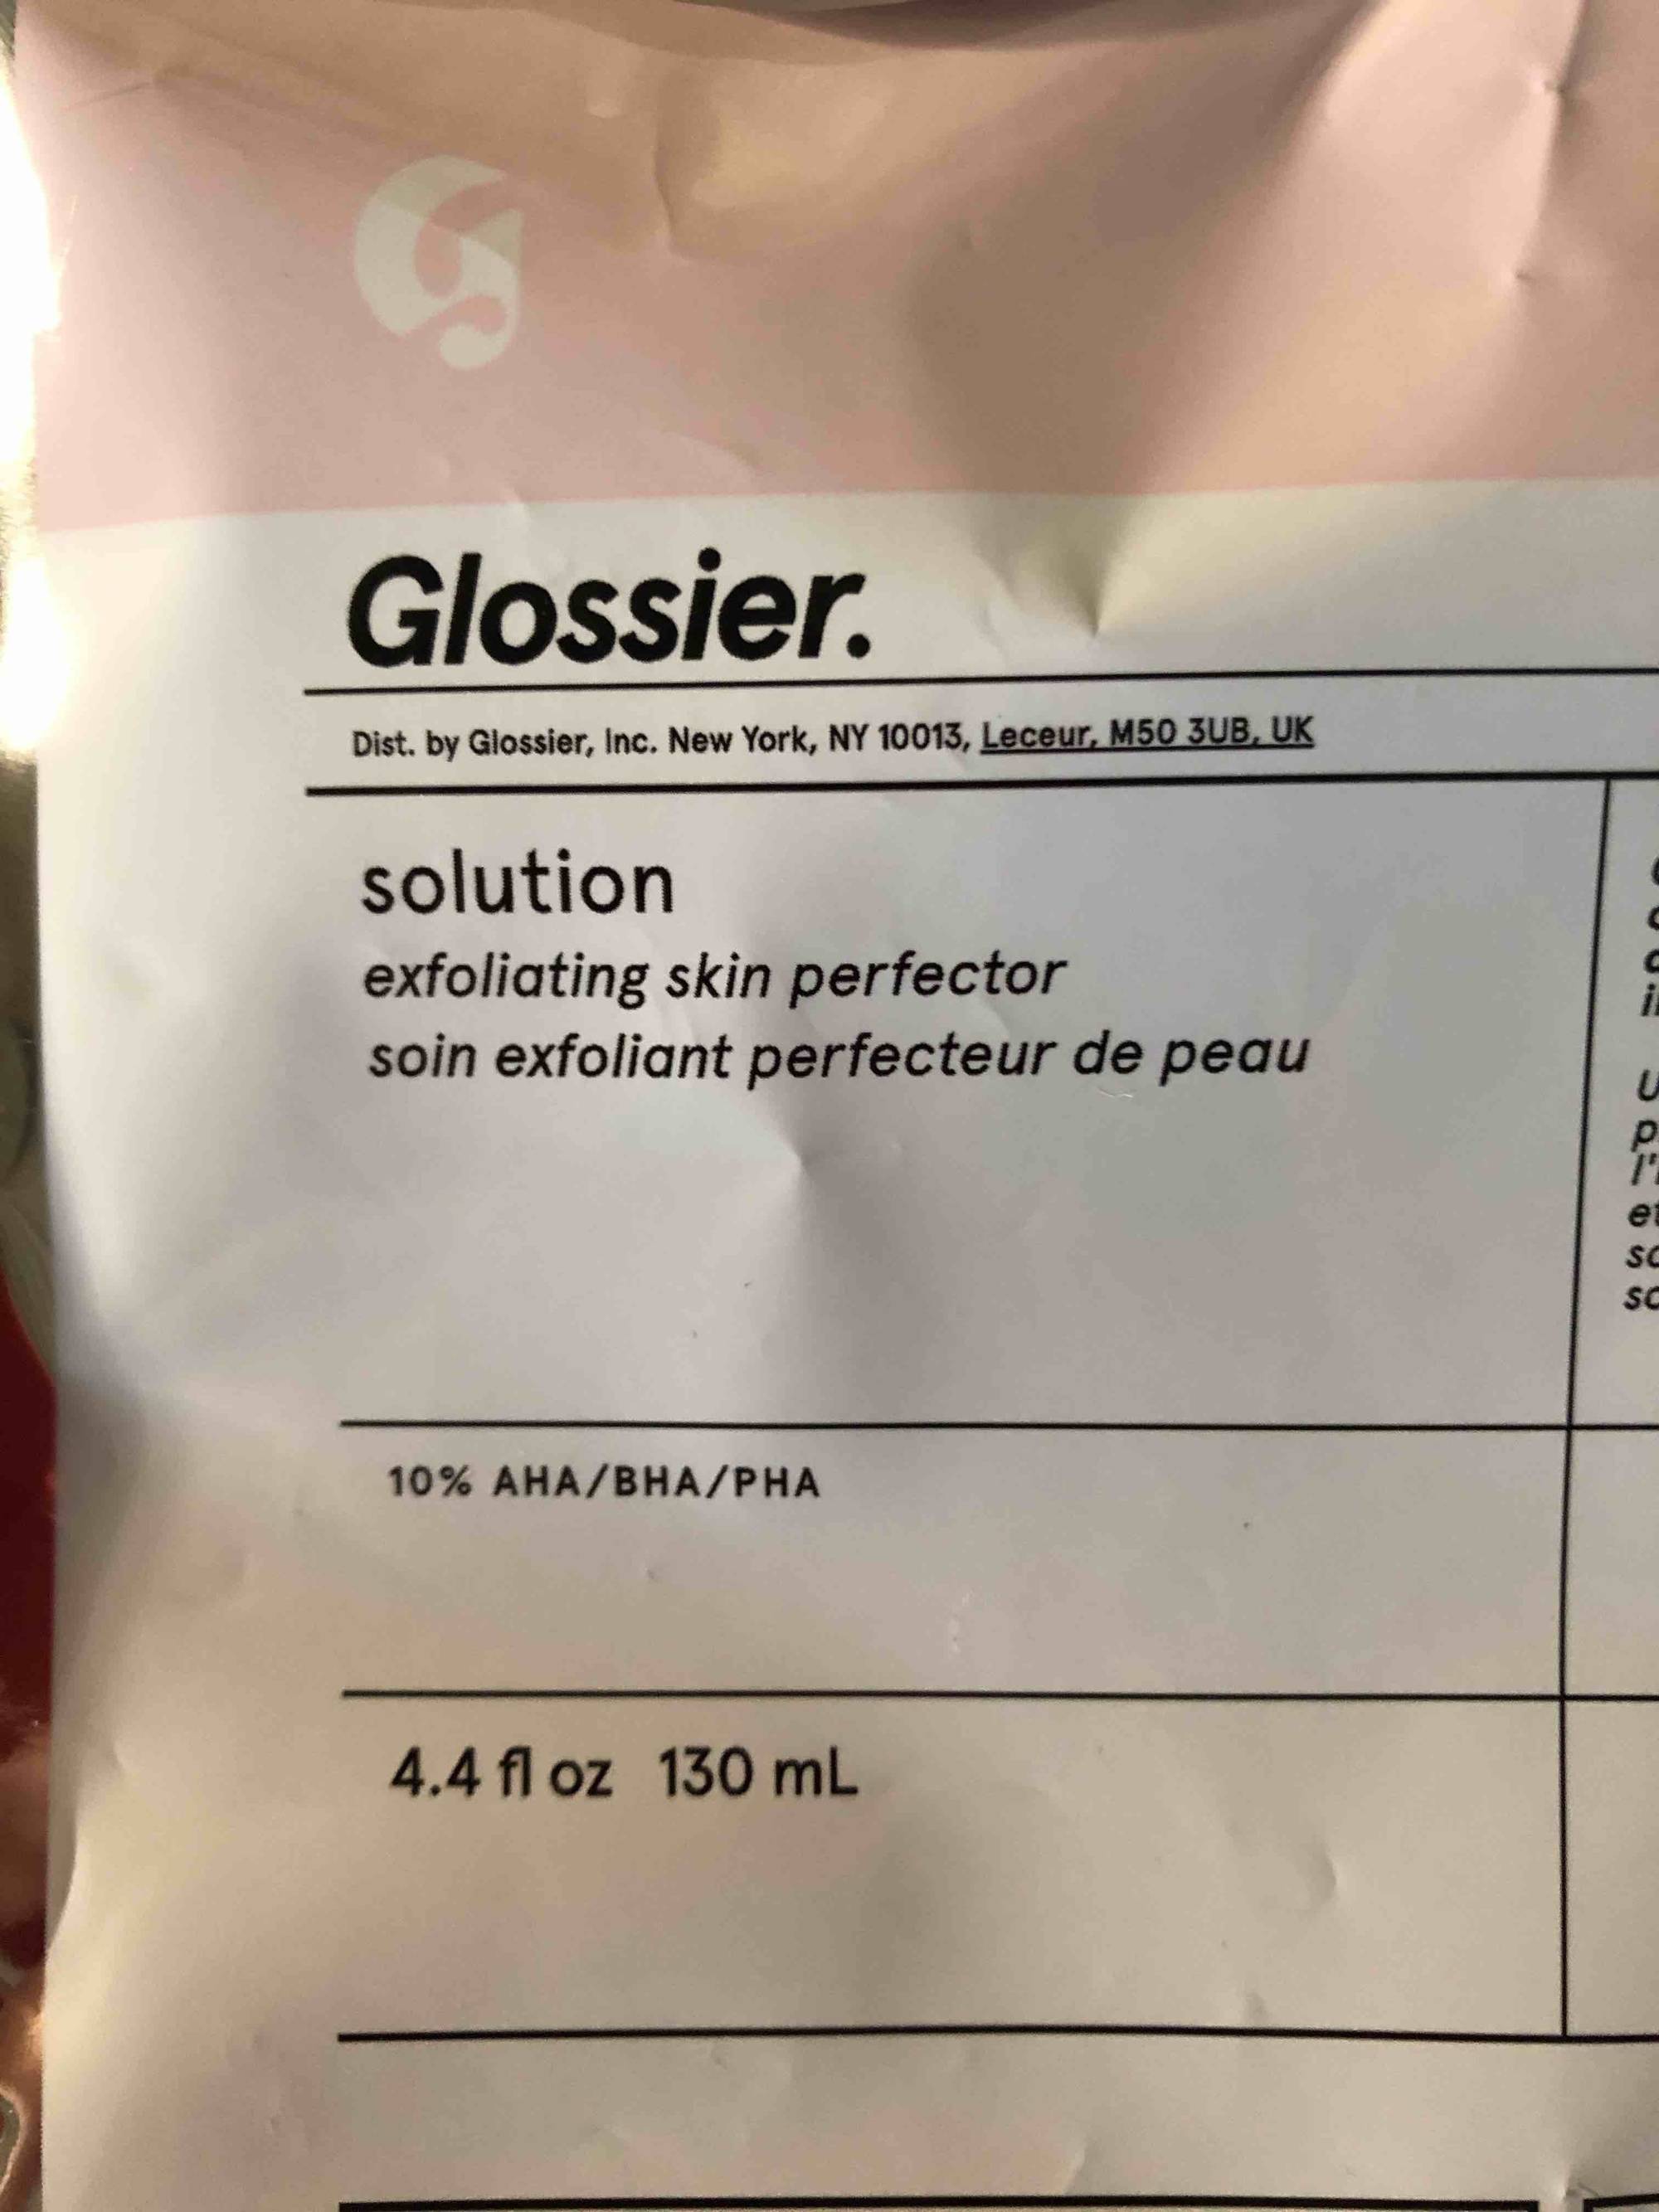 GLOSSIER - solution exfoliant perfecteur de peau